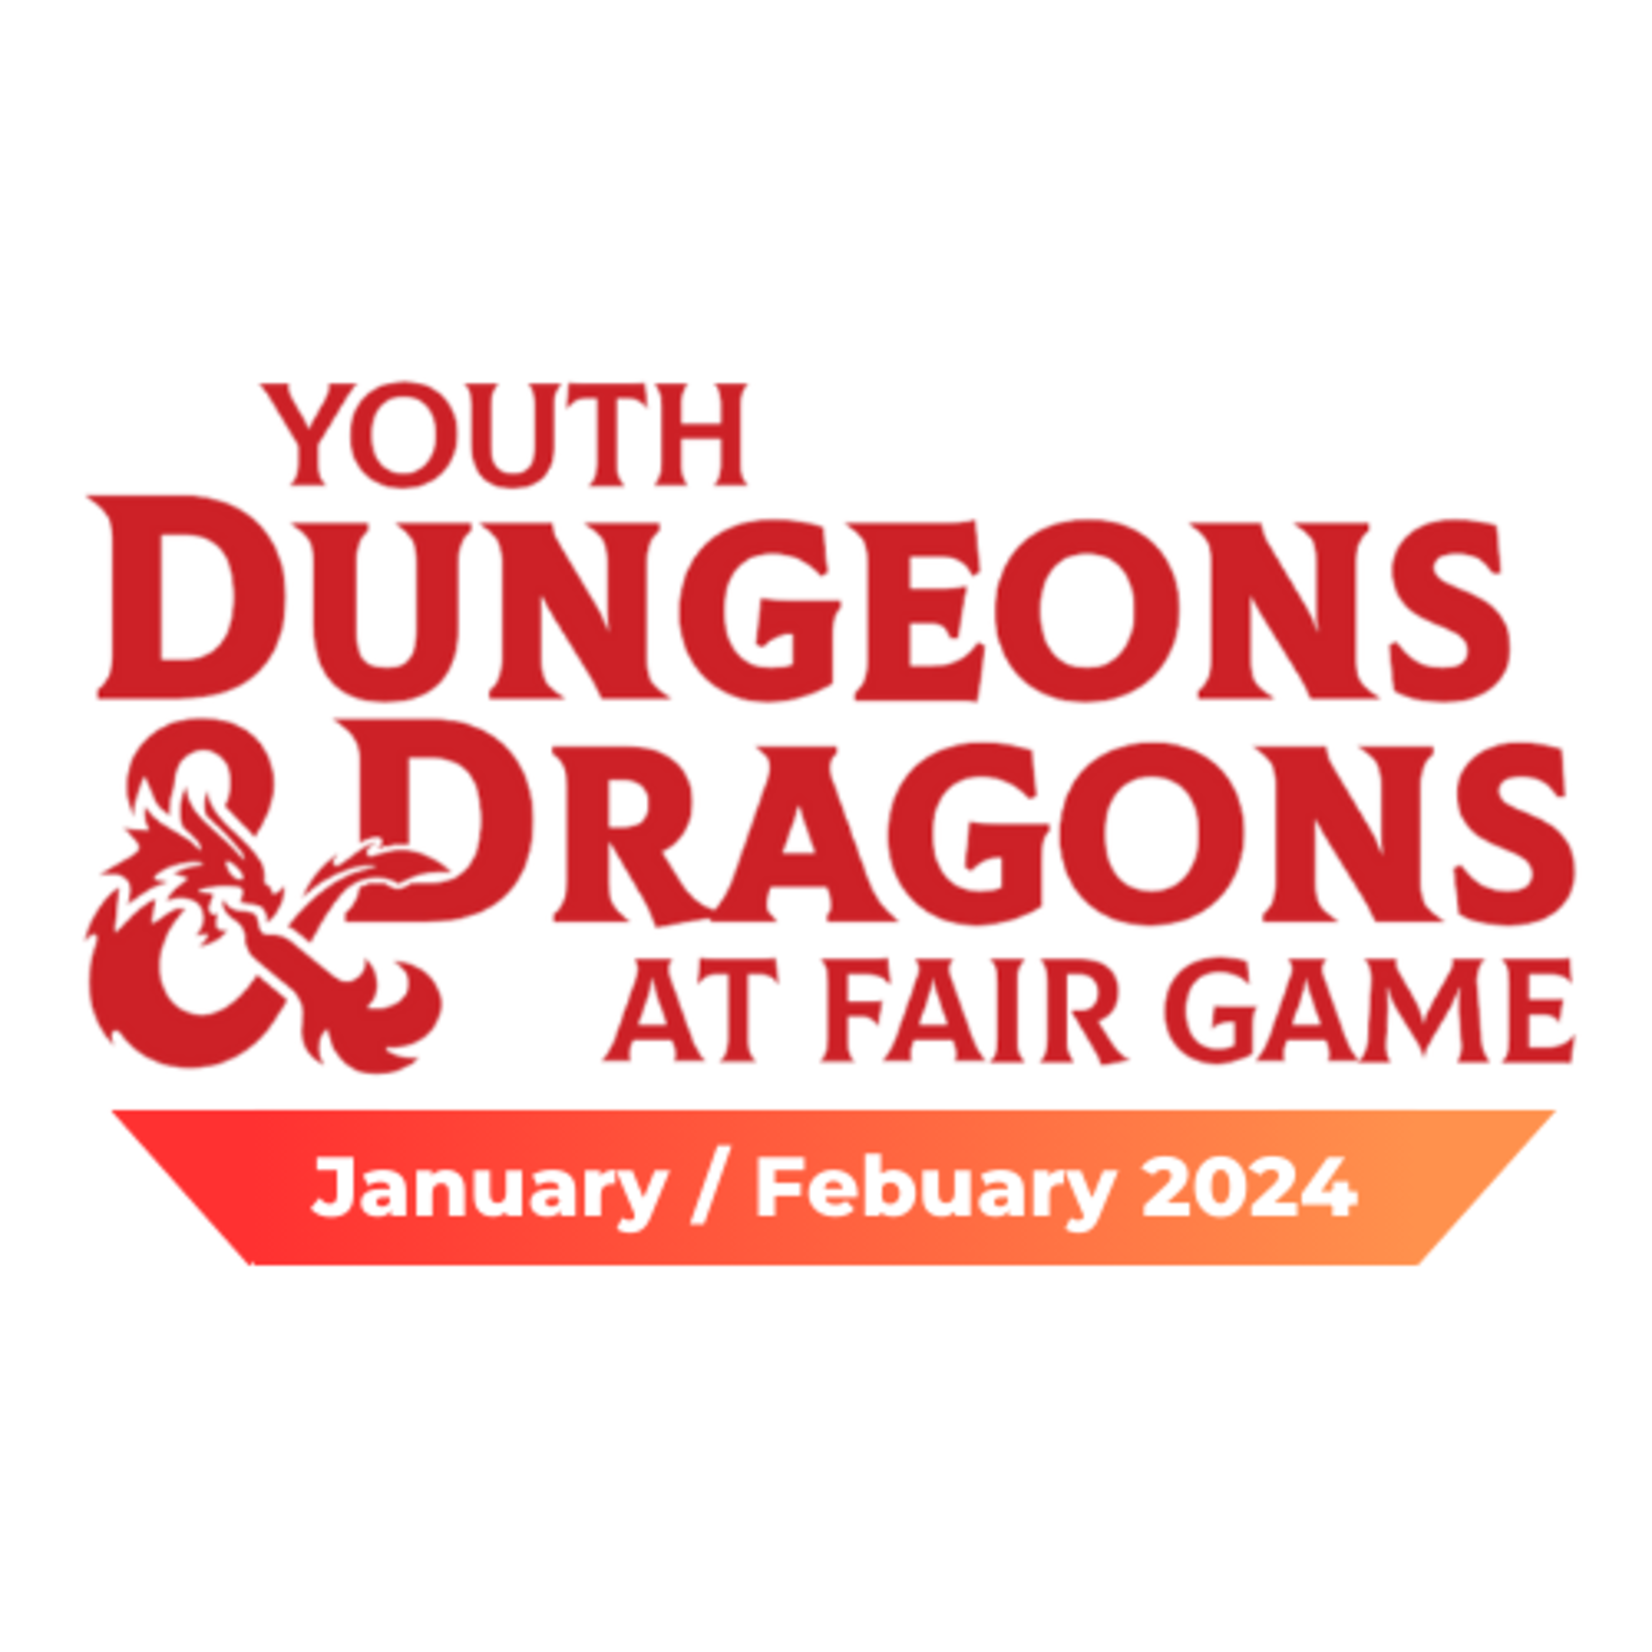 Fair Game YDND Jan/Feb 2024: Monday - Group LM1 La Grange 4-6 PM CST (Ages 15-17)